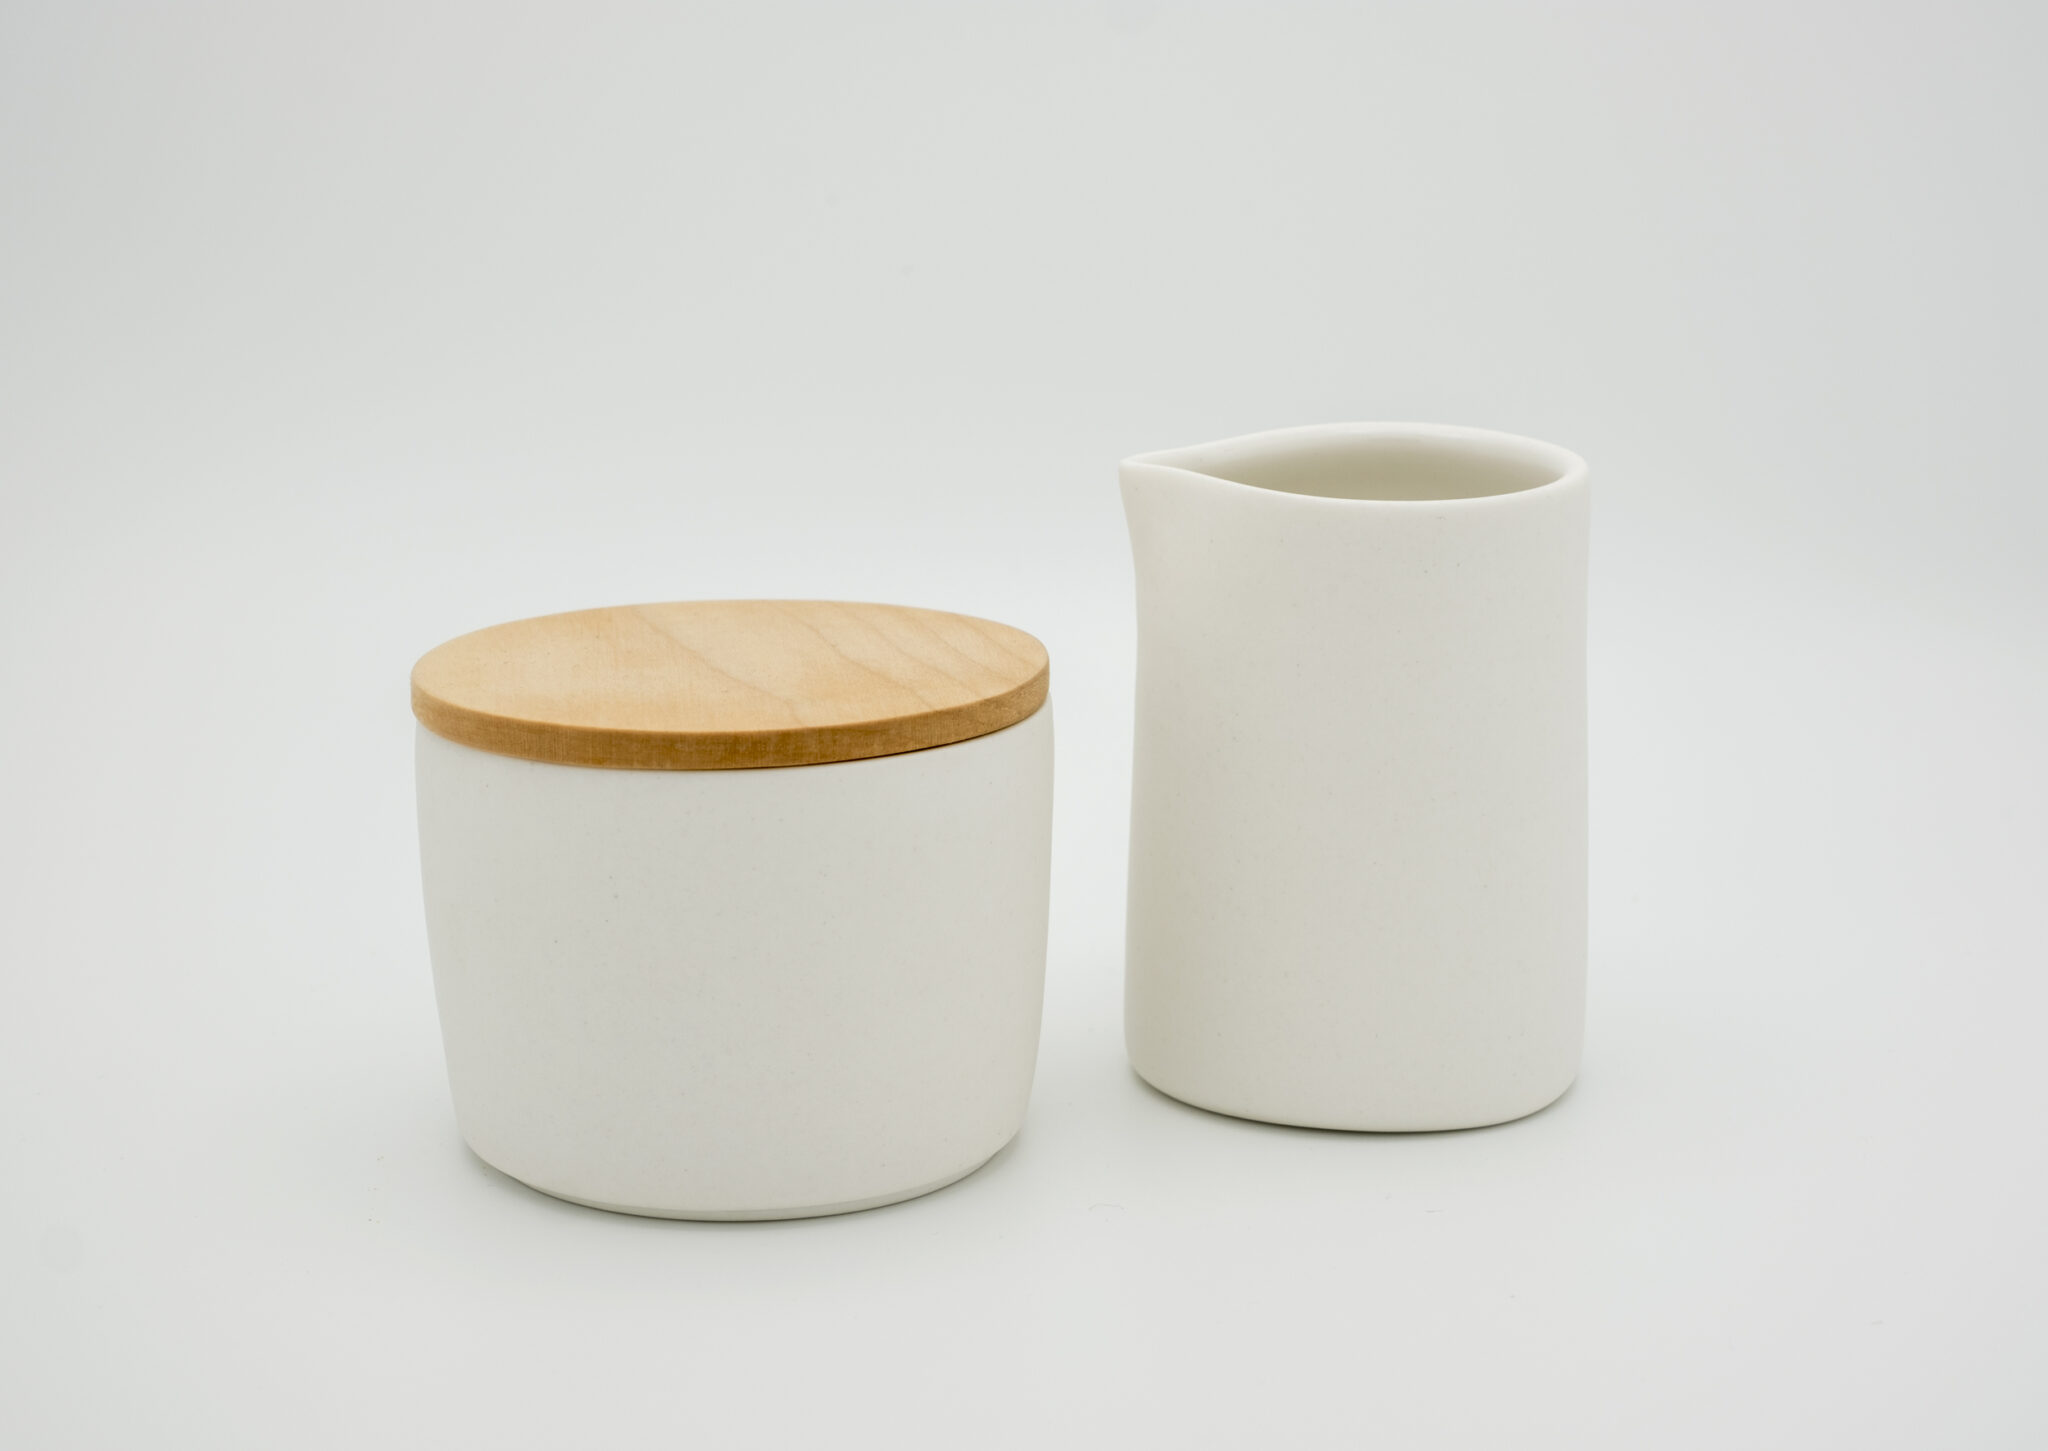 set of sugar bowl and milk jug in porcelain